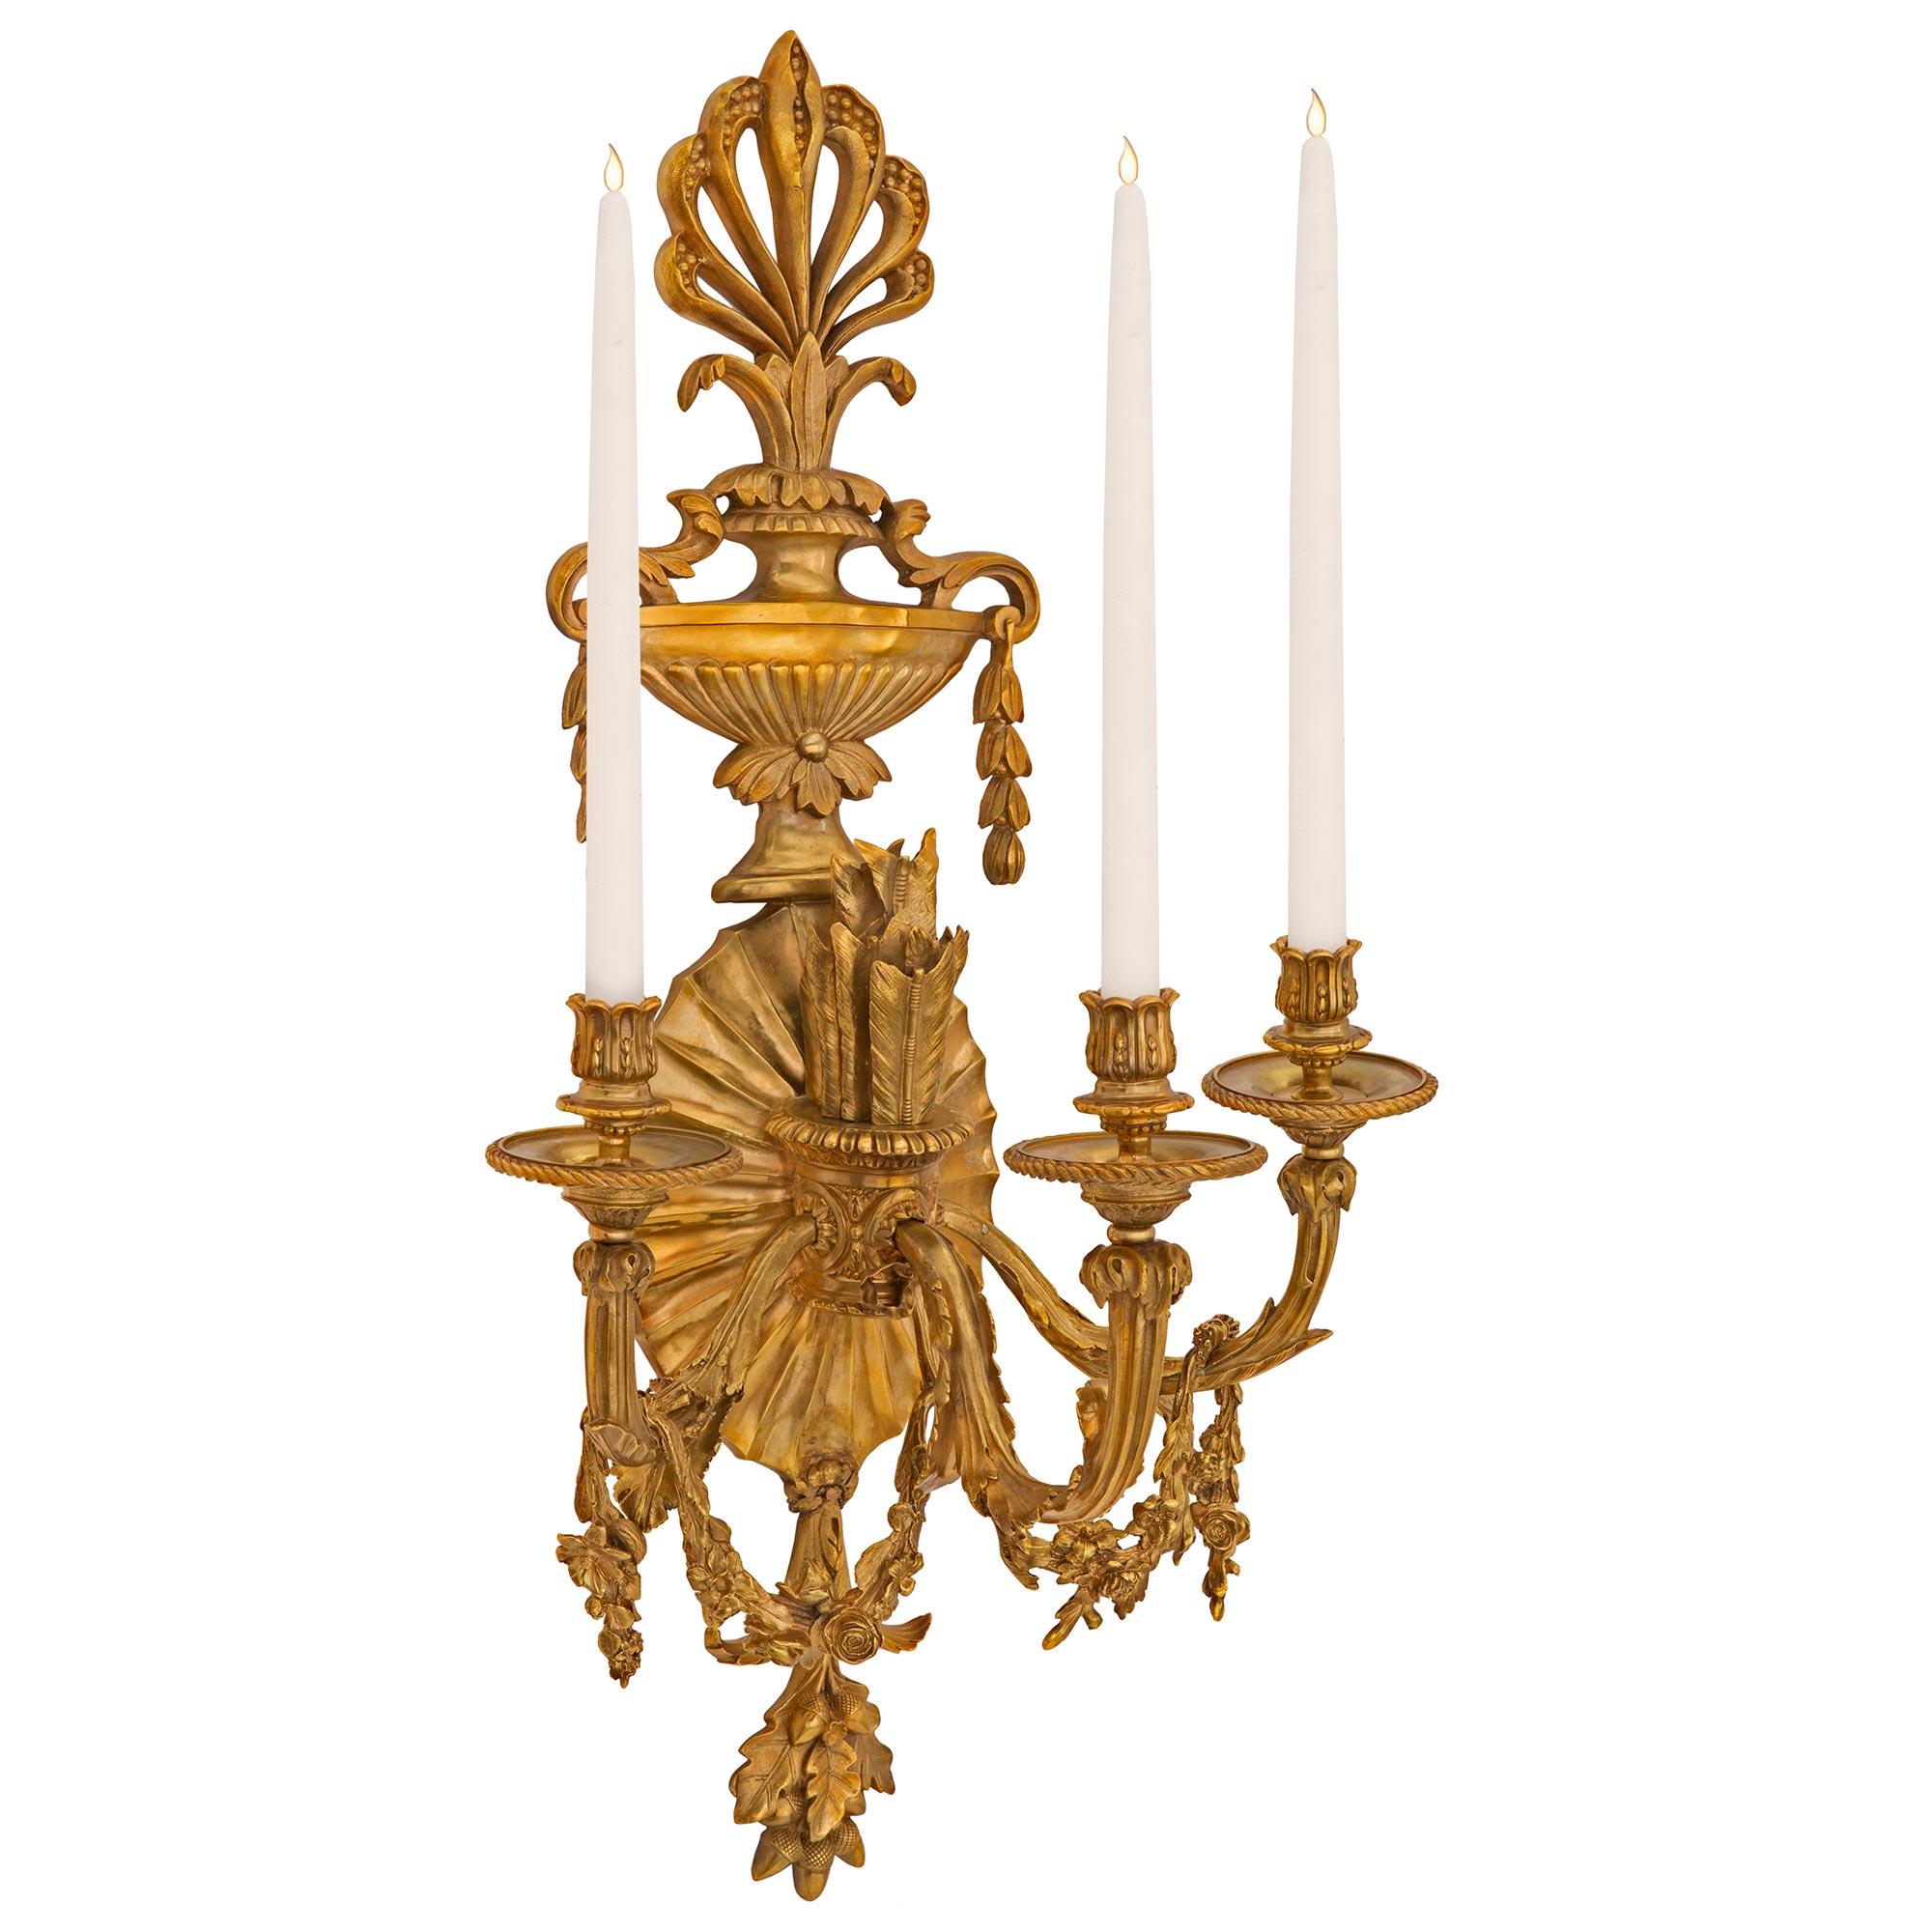 Une impressionnante paire d'appliques néoclassiques en stuc et bronze doré du 19ème siècle. Chaque applique à trois bras est centrée par de charmantes feuilles de chêne et des glands finement détaillés, sous la belle plaque arrière cannelée à motif